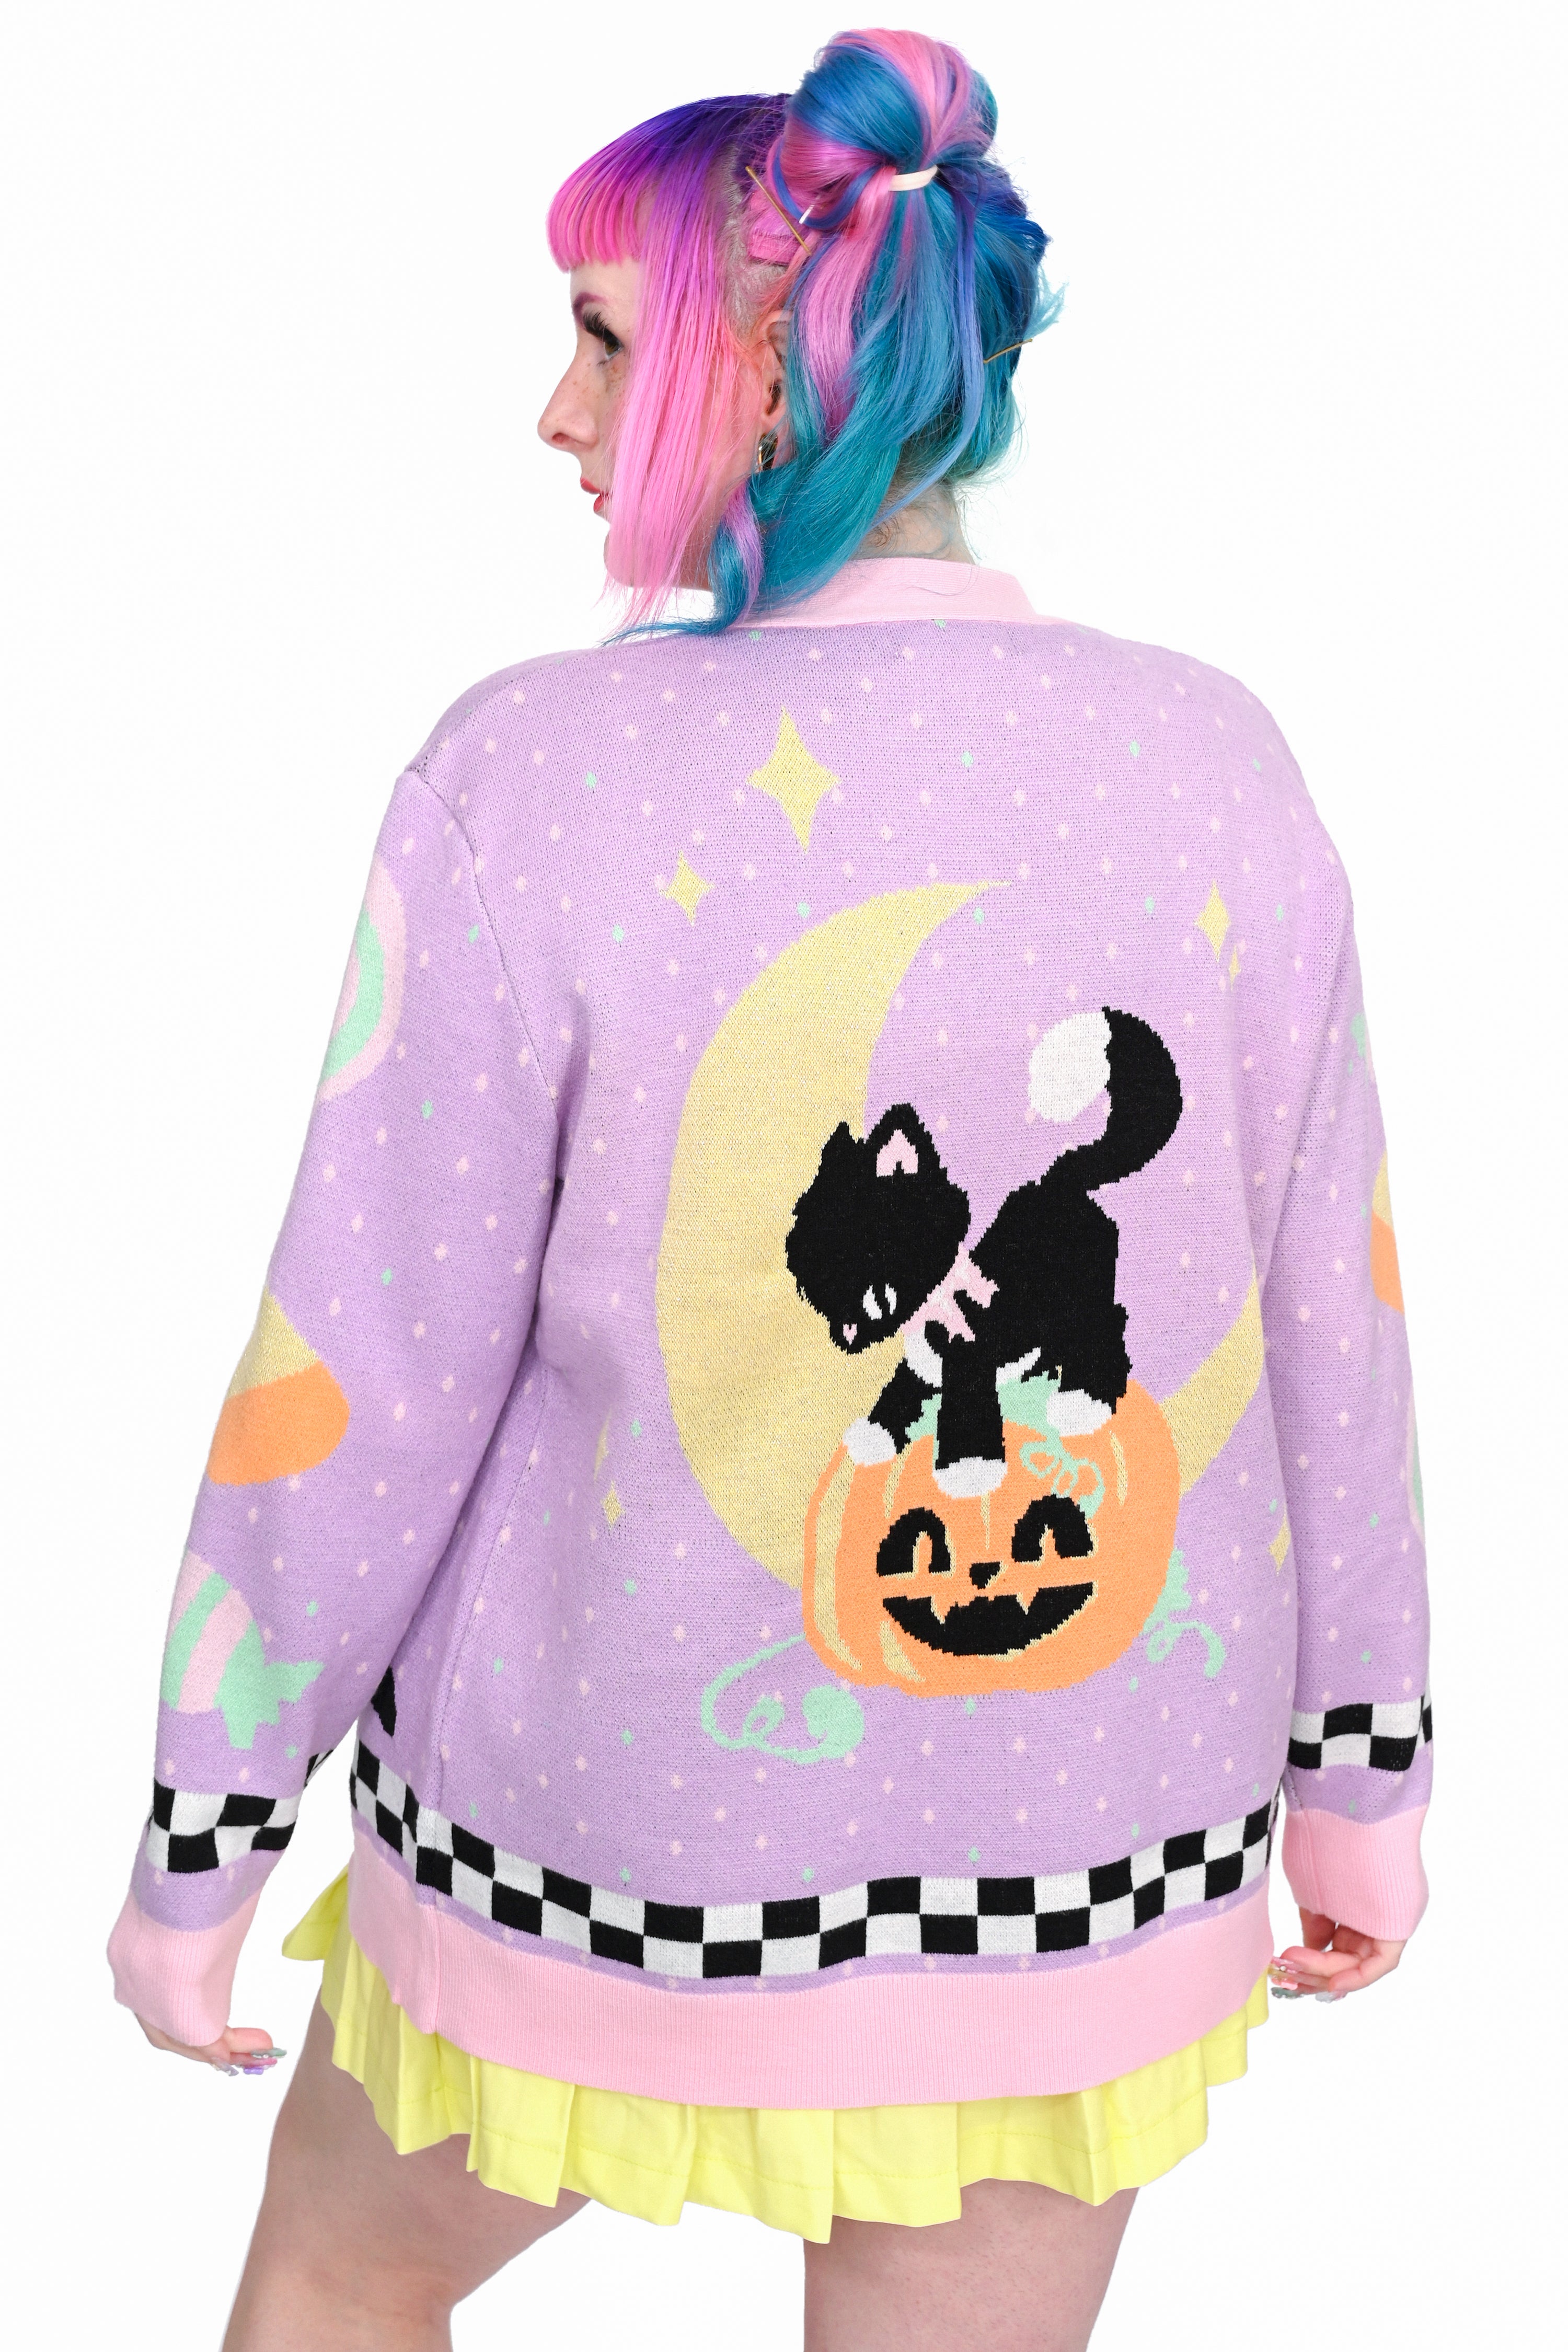 Binx’s Spooky Sweater